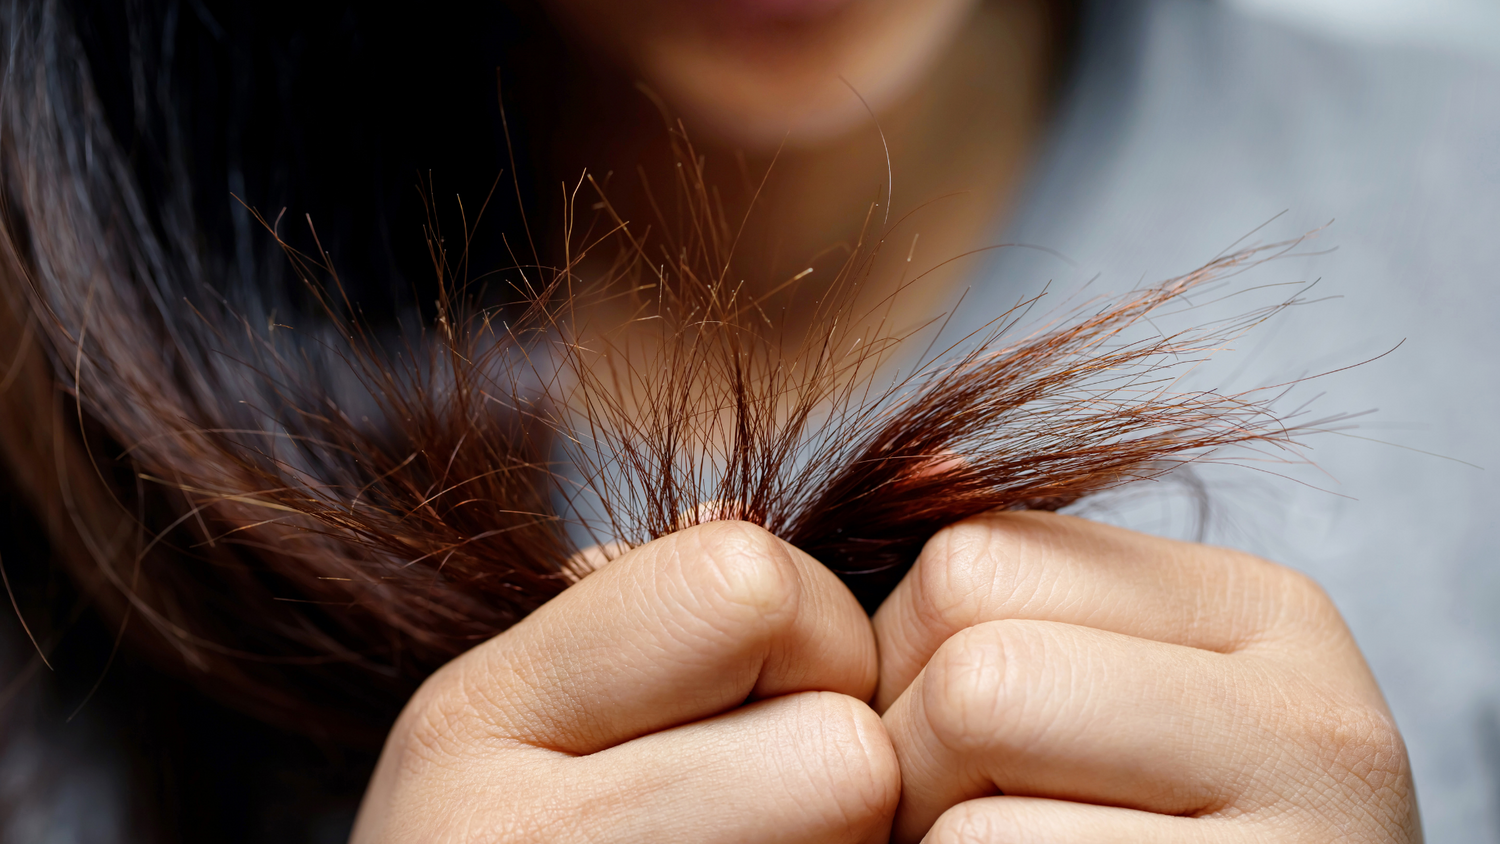 Femmes brunes regardant les pointes abîmées et fourchues de ses cheveux bruns qu'elle tient entre ses mains 